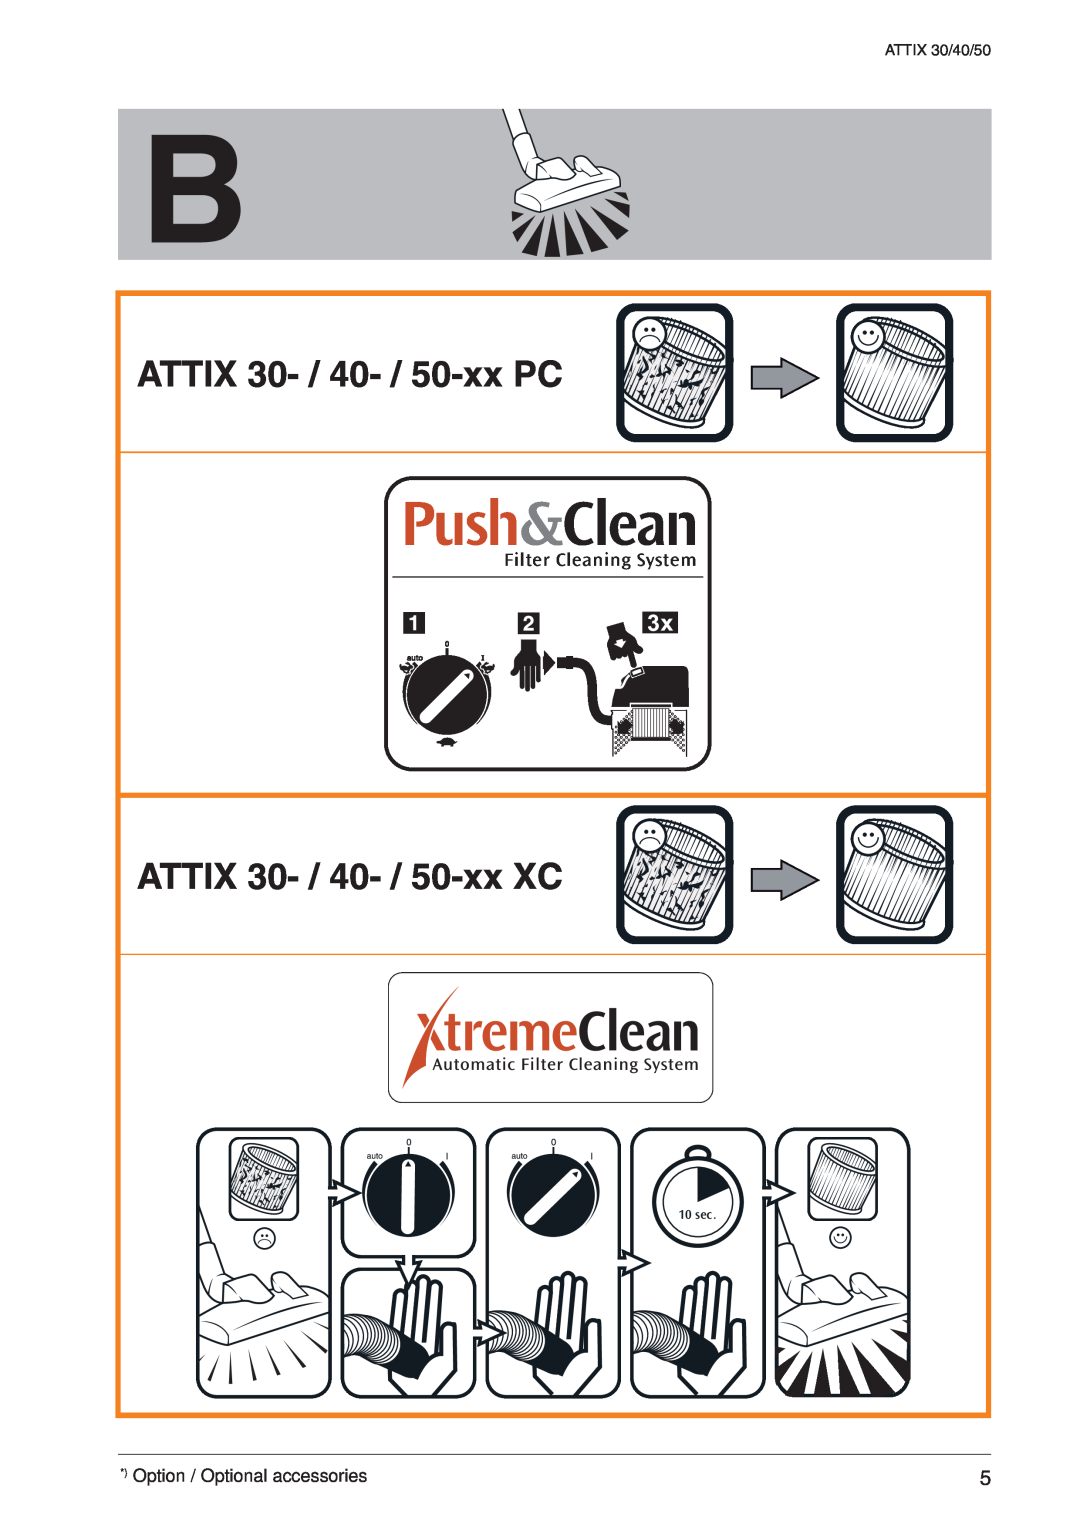 Nilfisk-ALTO ATTIX 30 / PC / XC ATTIX 30- / 40- / 50-xxPC, ATTIX 30- / 40- / 50-xxXC, Filter Cleaning System, 10 sec 